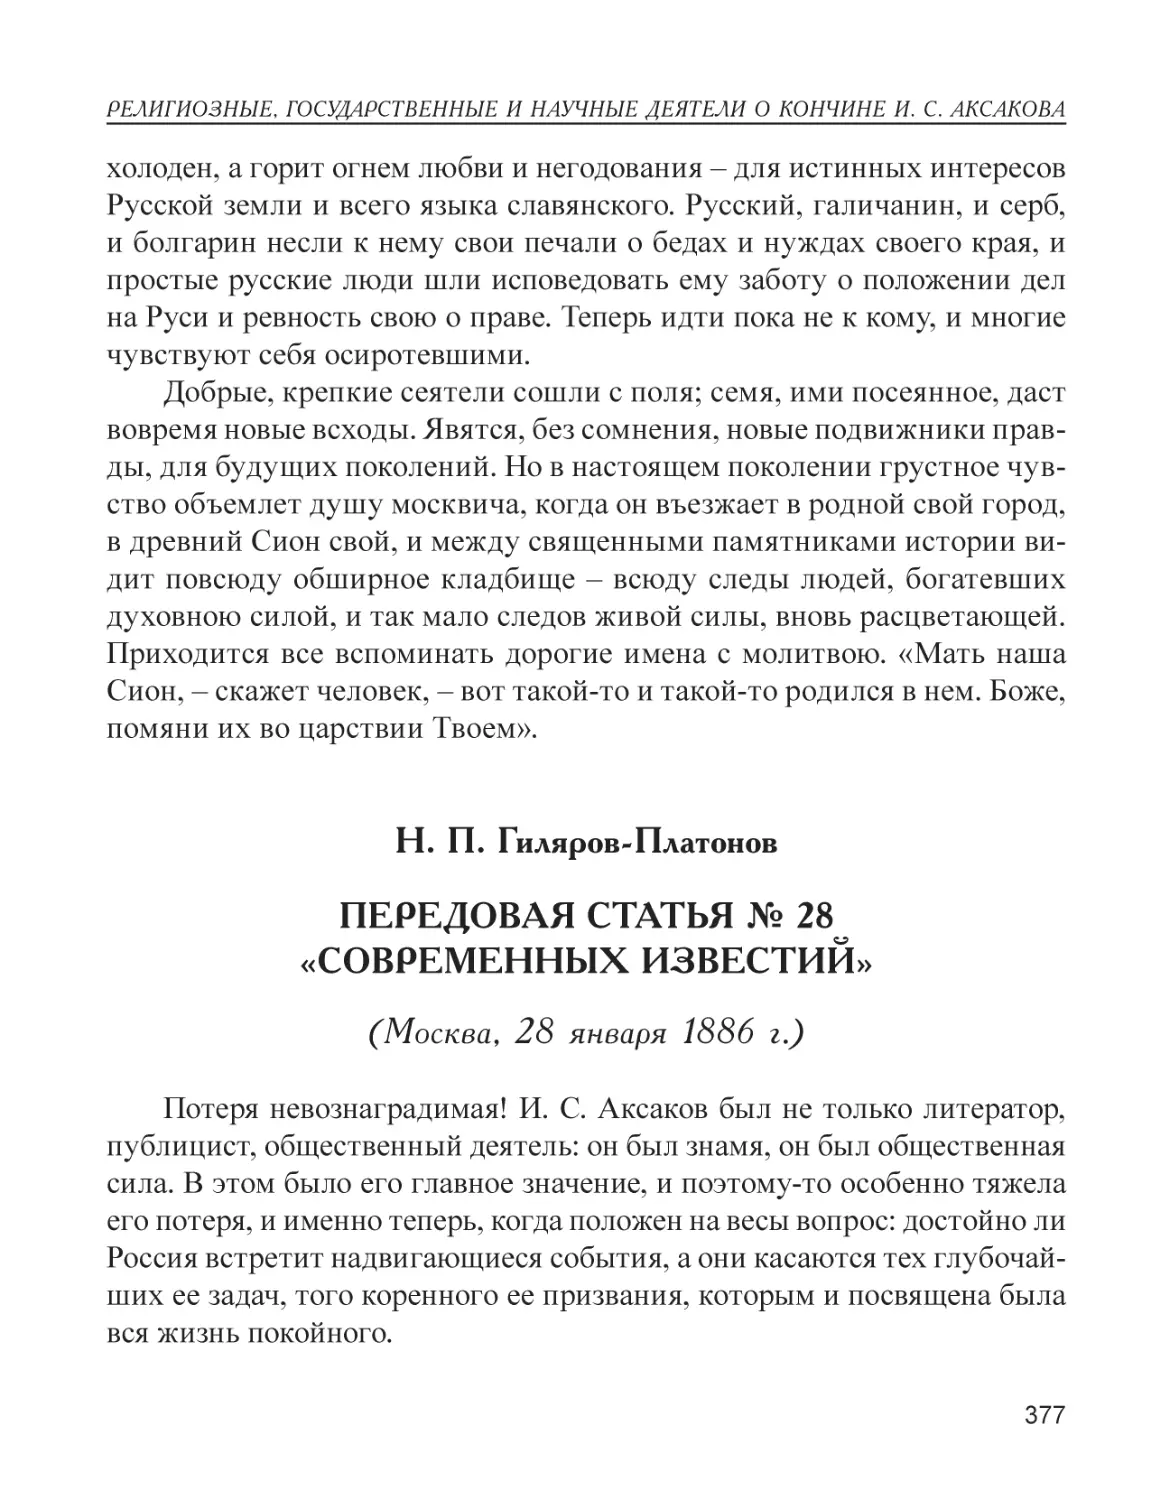 Н. П. Гиляров-Платонов. Передовая статья № 28 «Современных известий» (Москва, 28 января 1886 г.)